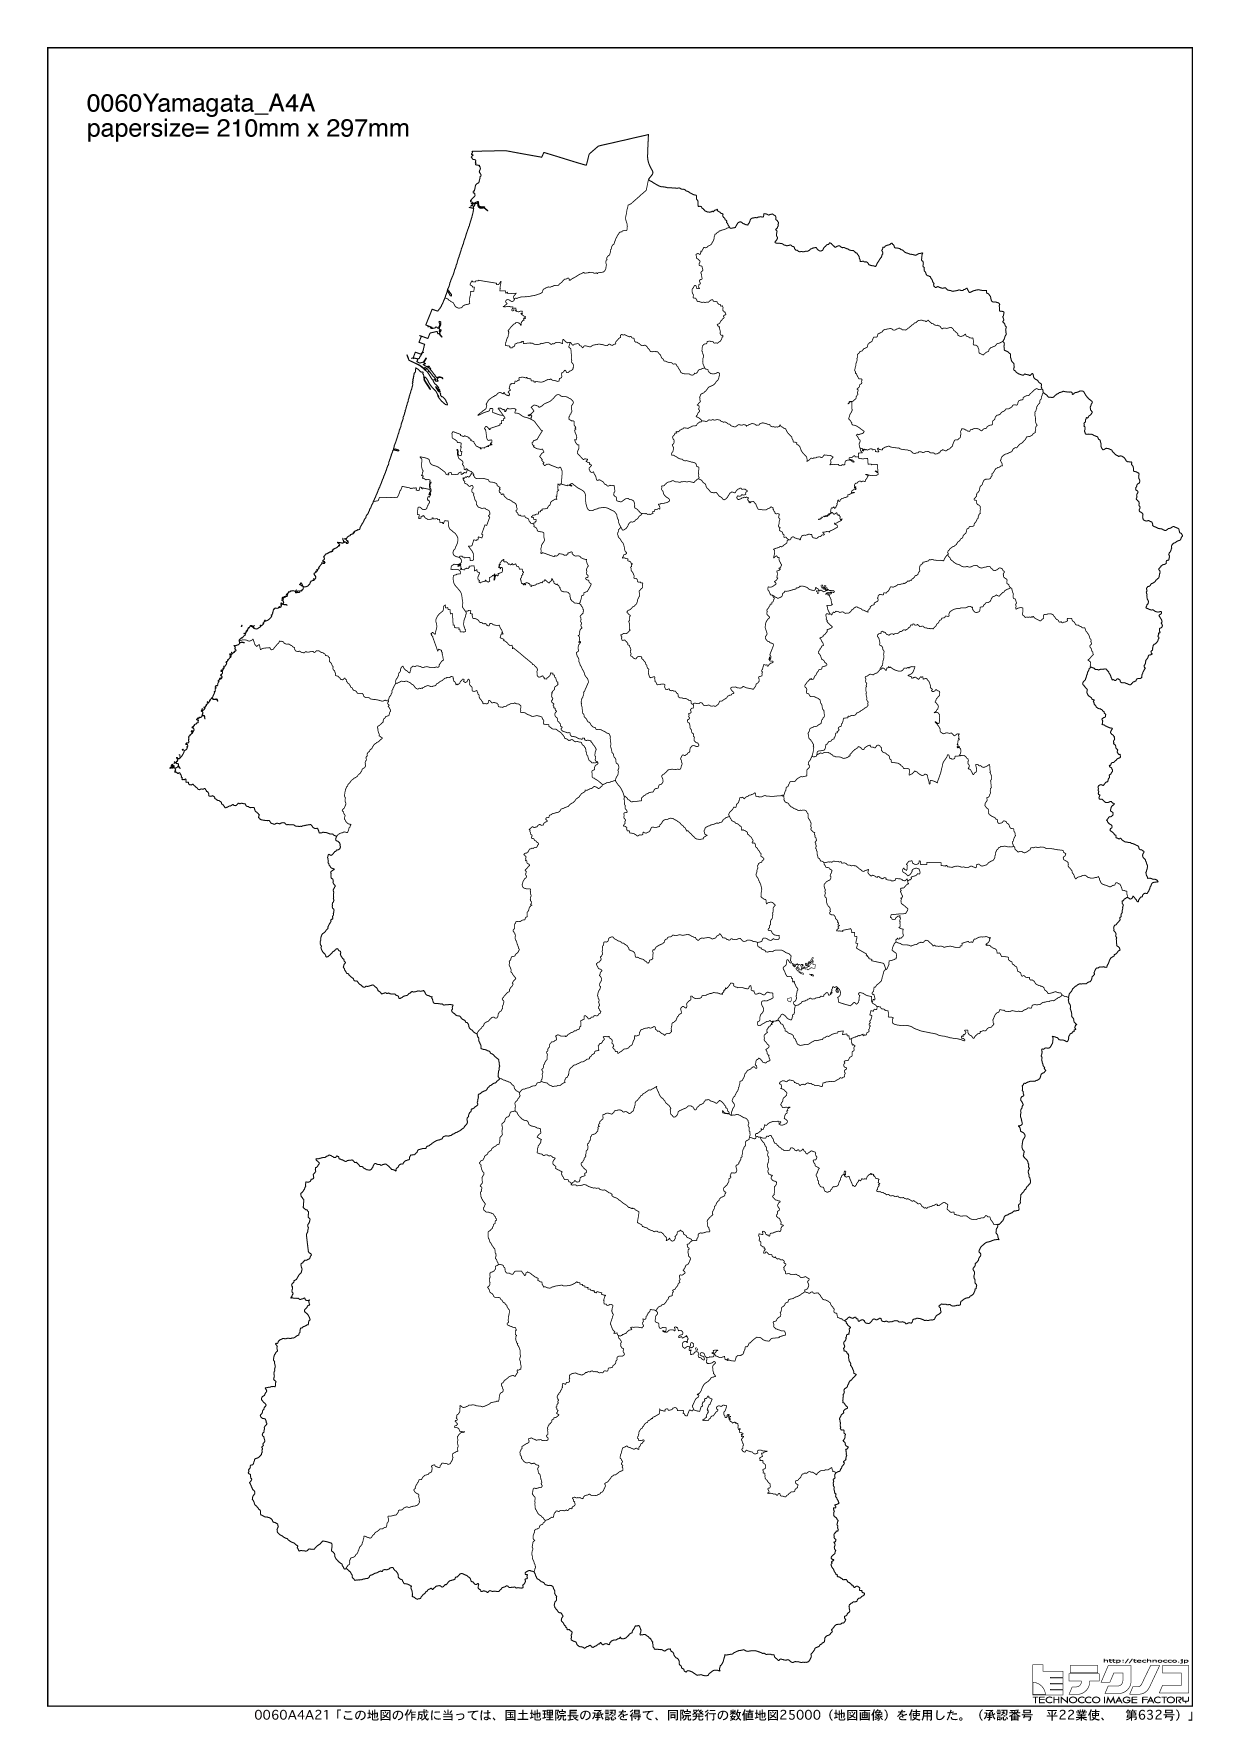 山形県の白地図と市町村の合併情報